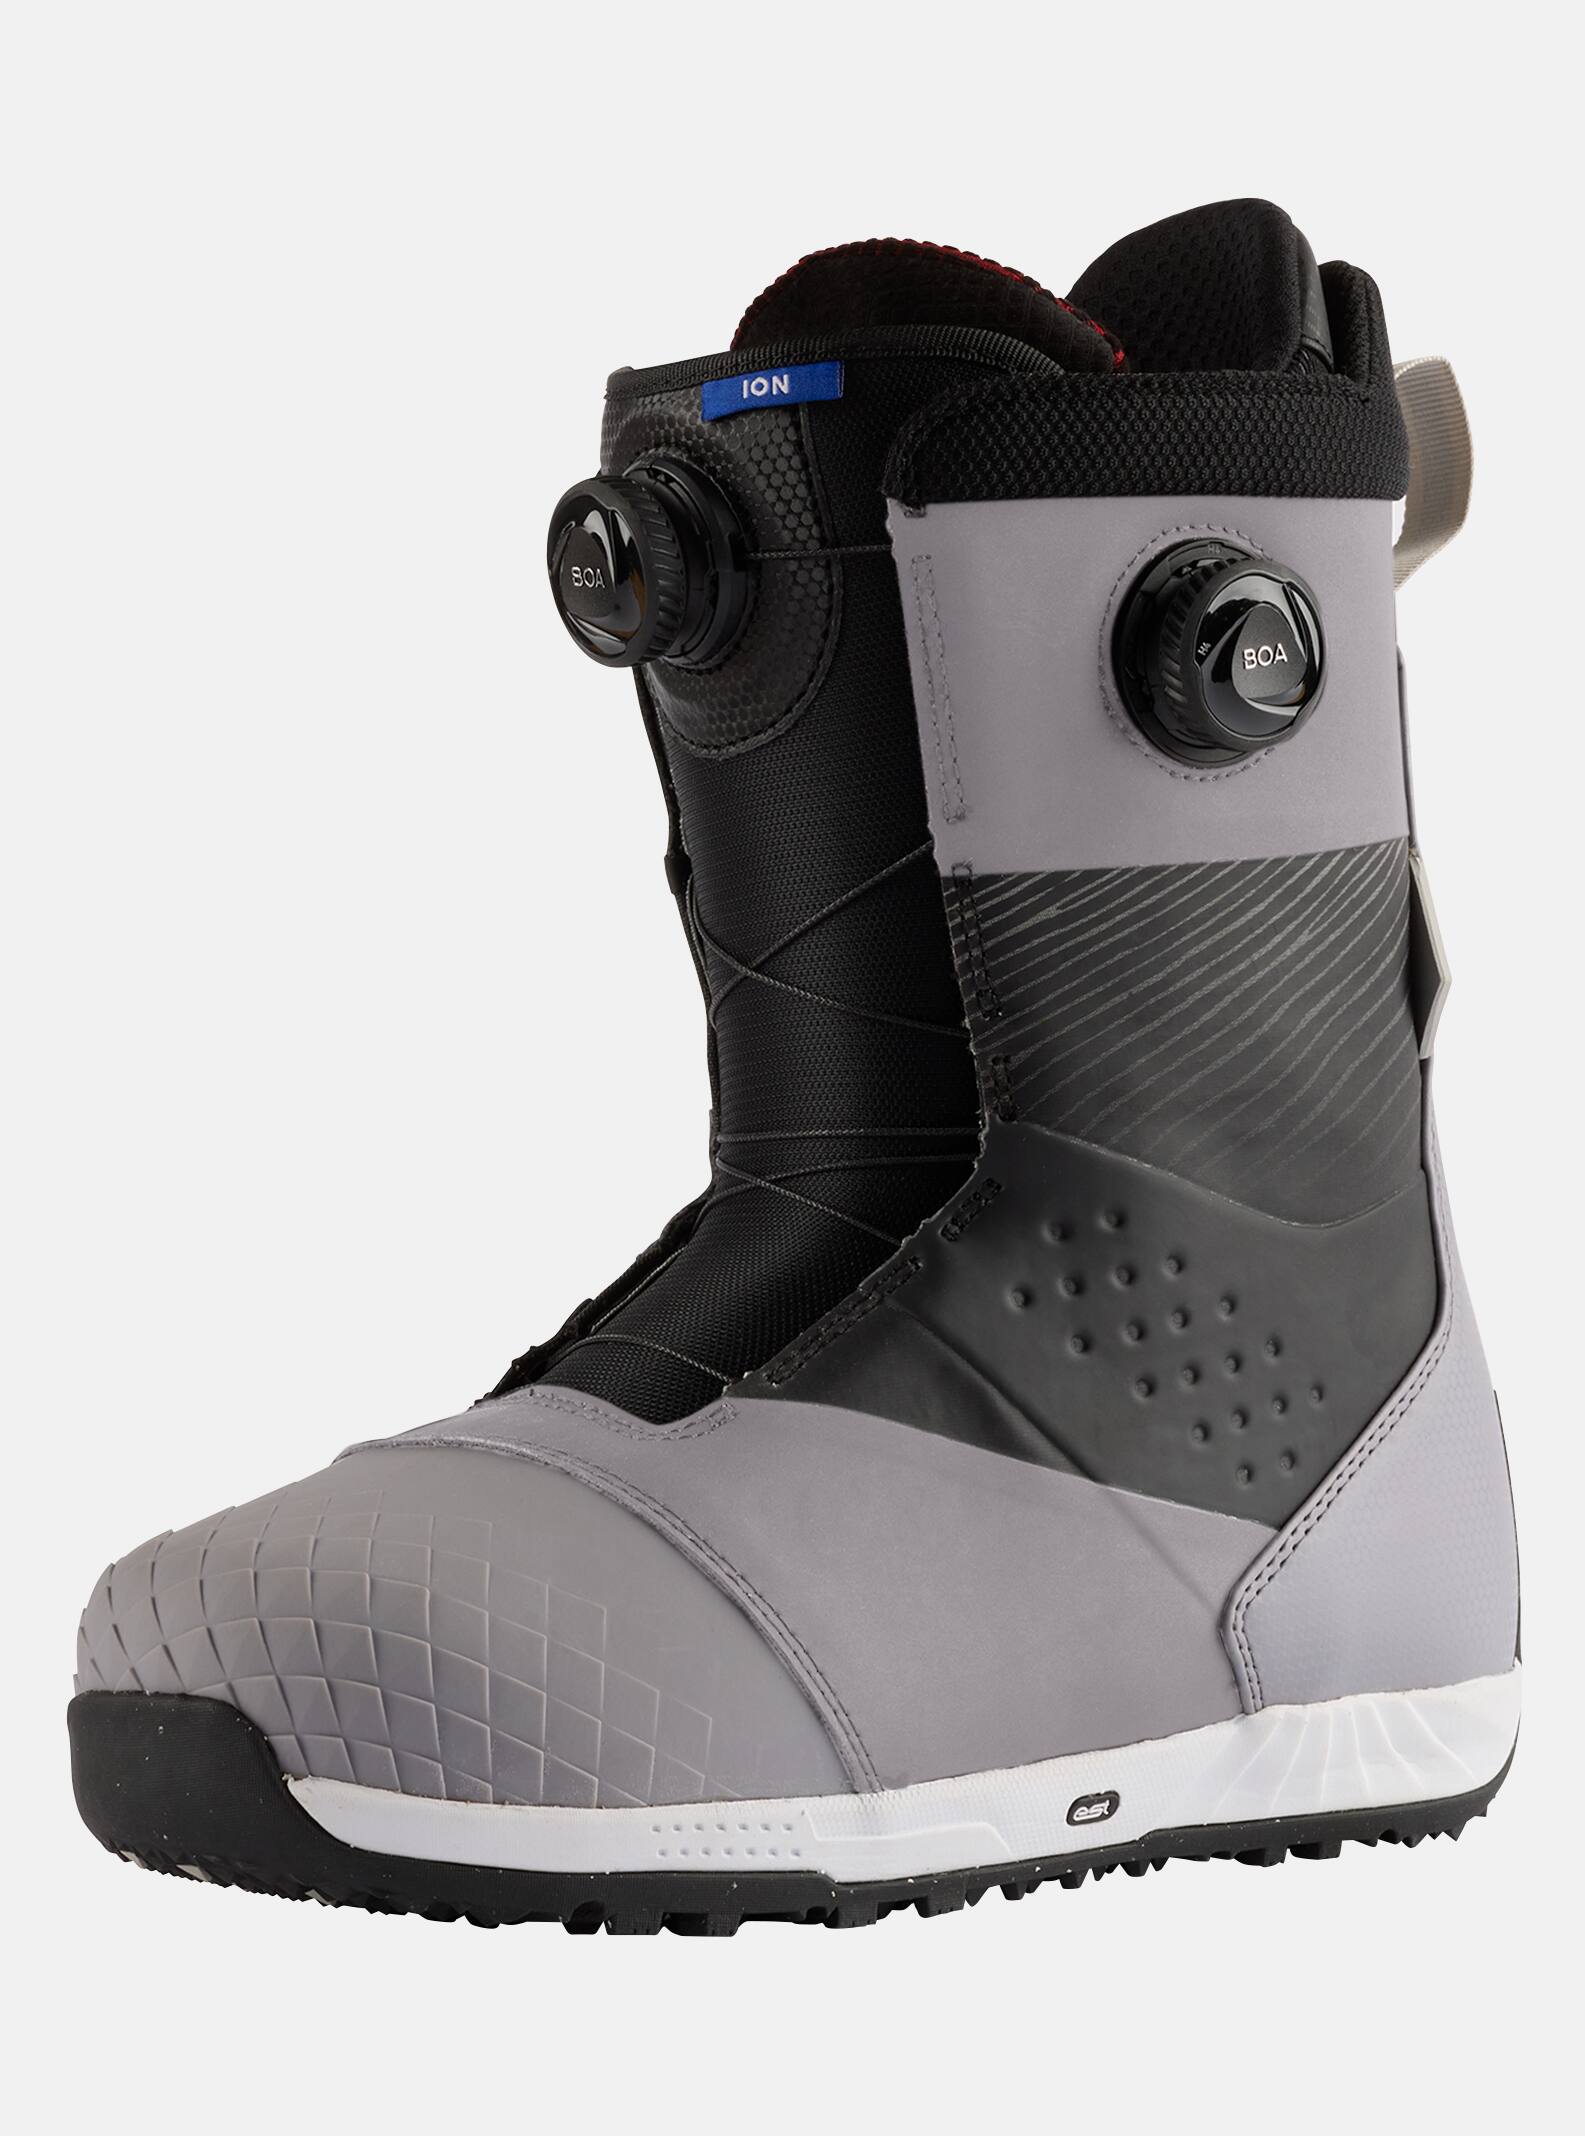 Burton - Boots de snowboard Ion BOA® homme, Sharkskin / Black, 11